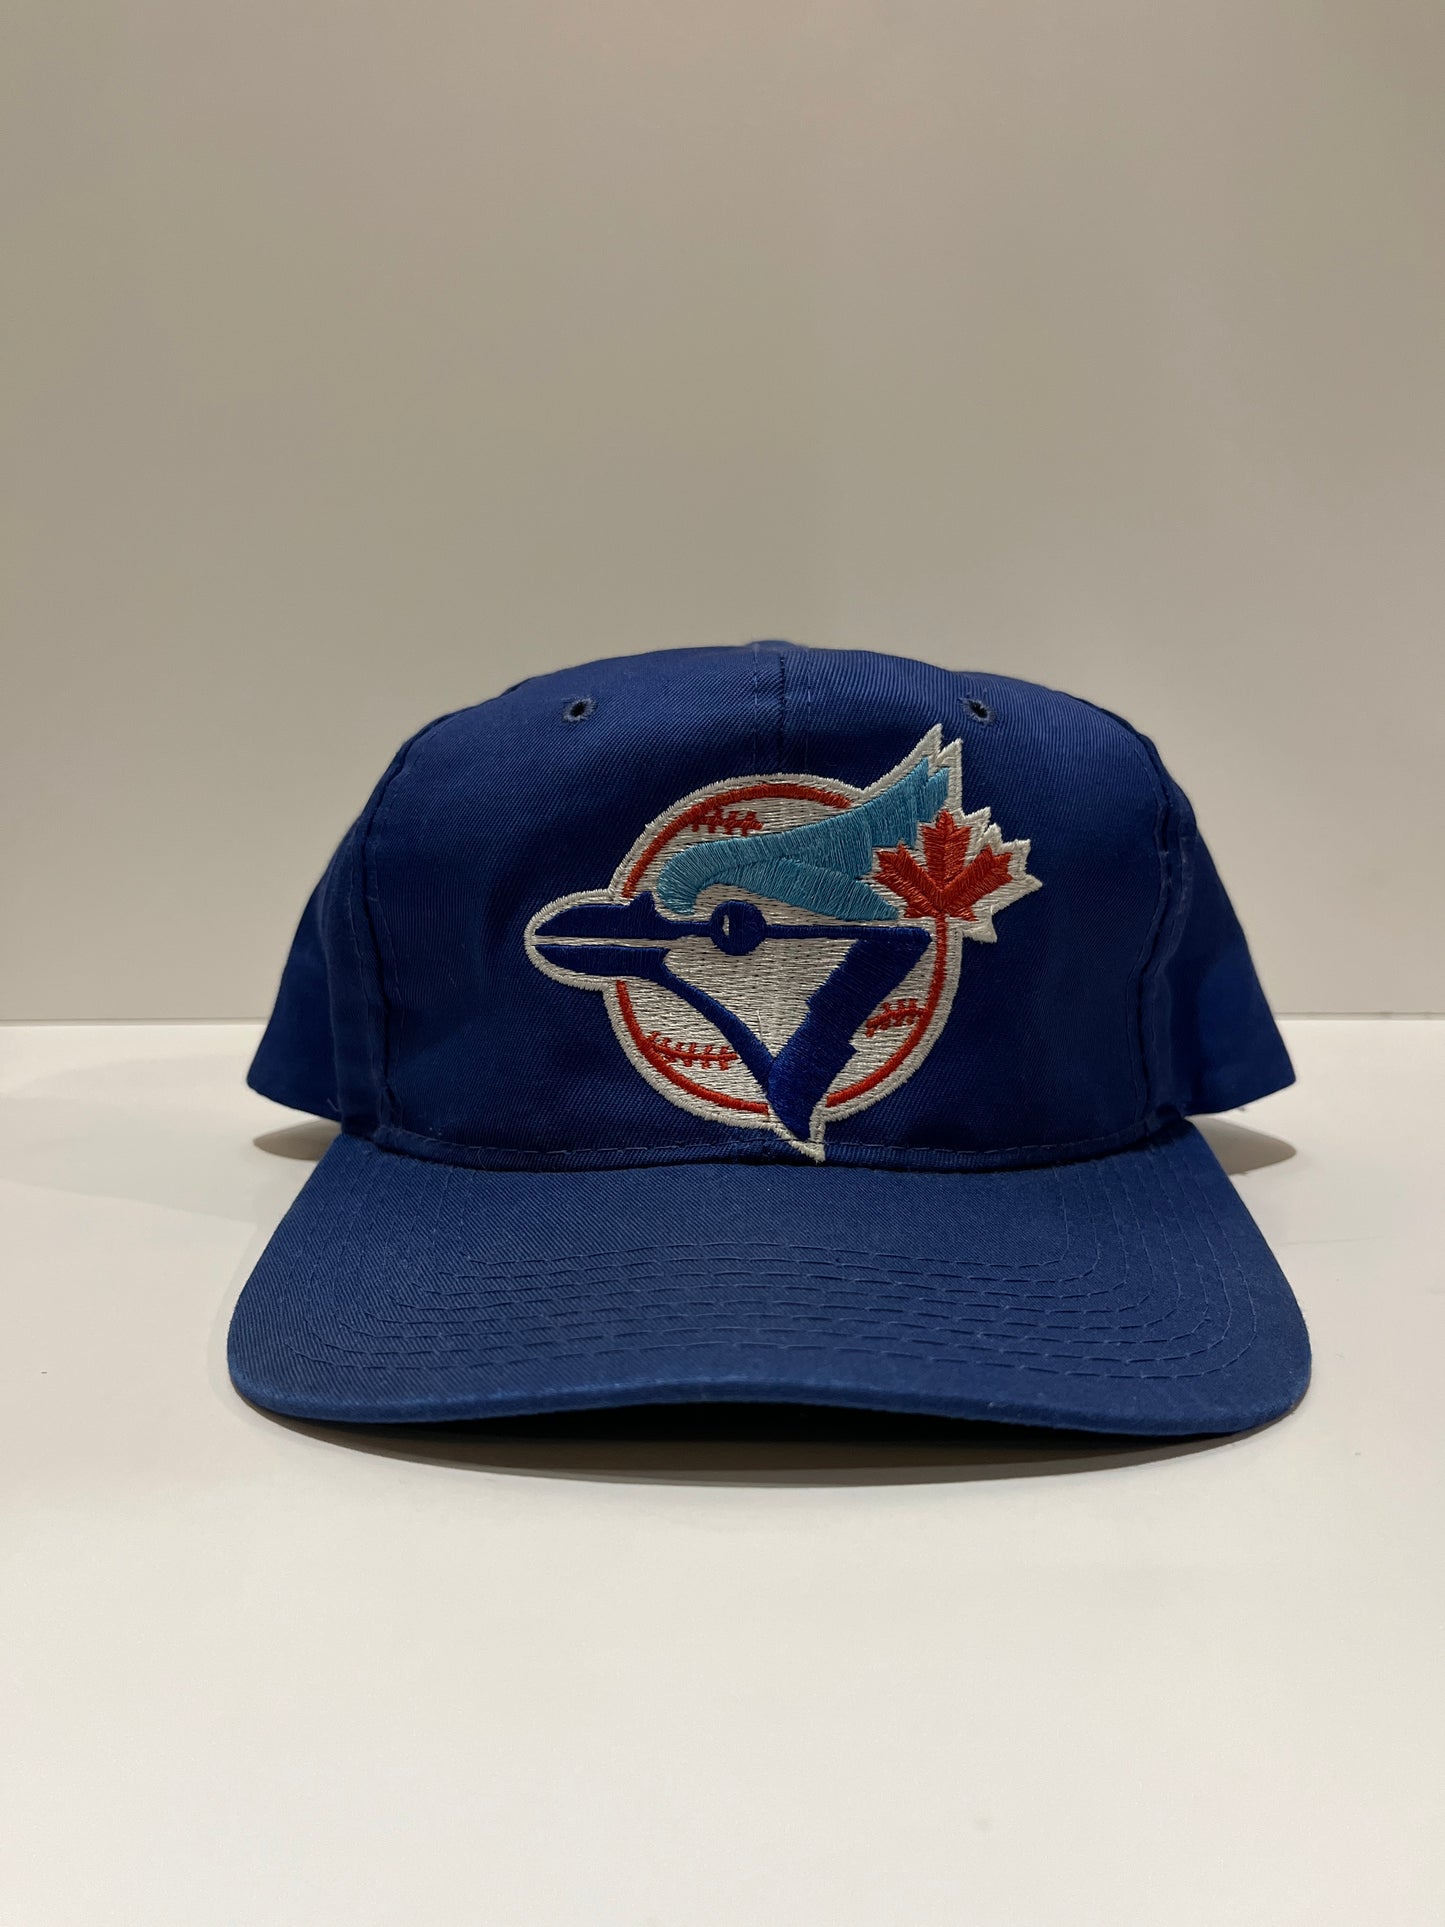 Vintage Starter Blue Jays Snapback Hat